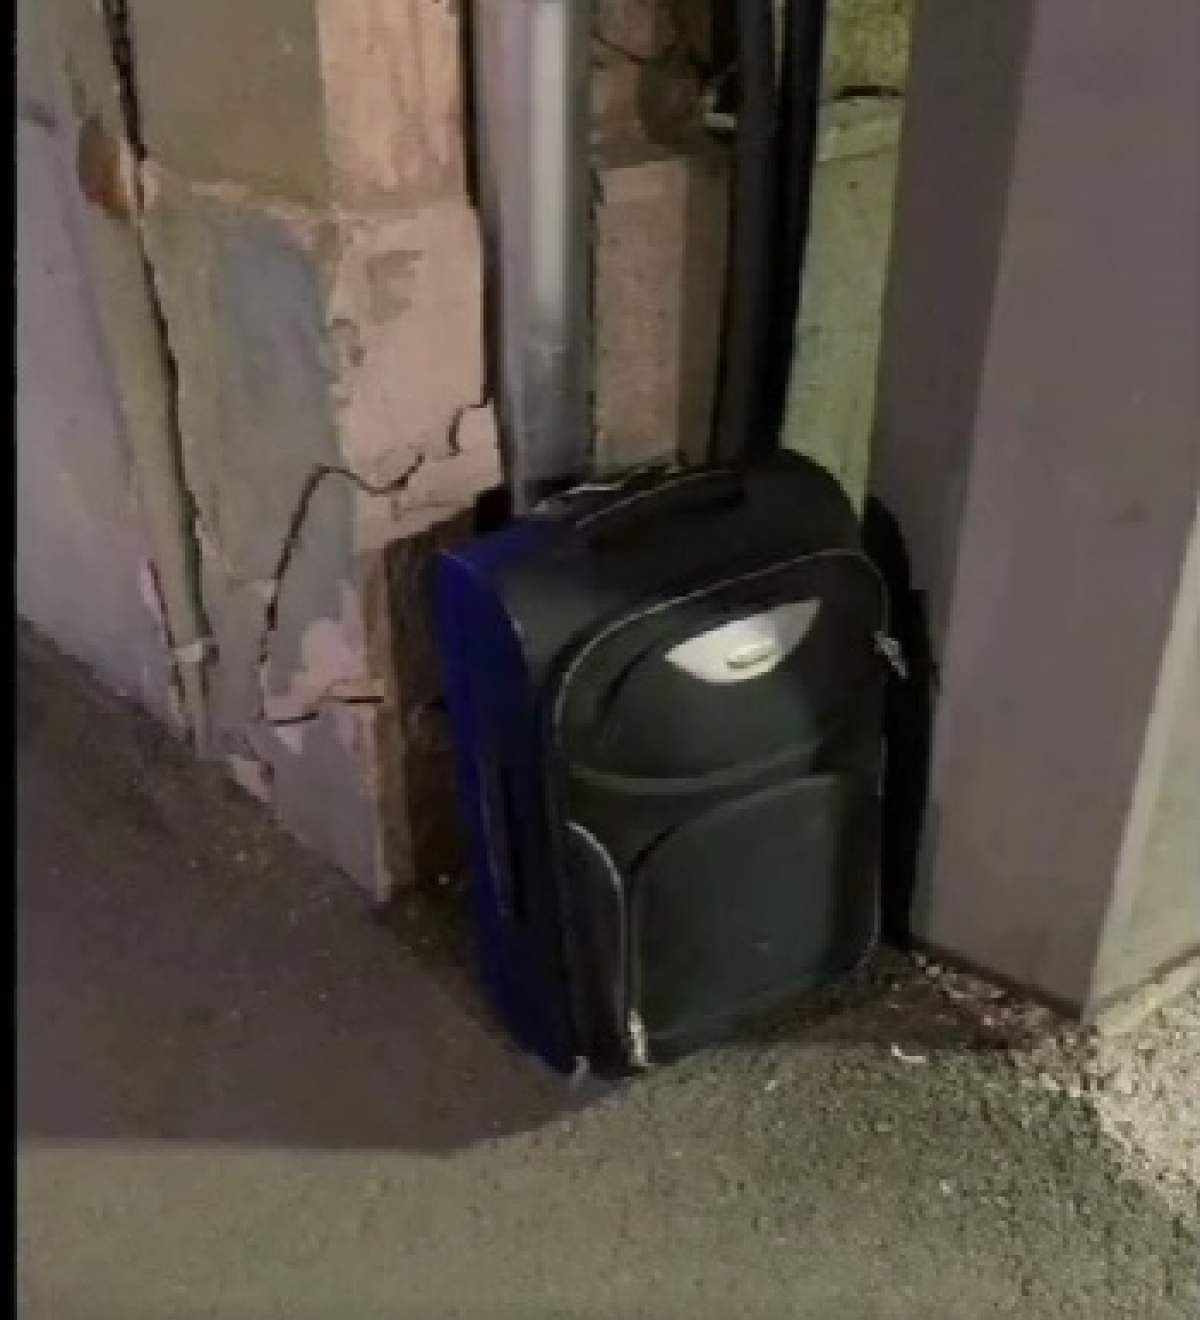 S-a găsit o valiză suspectă în Piața Catedralei din Arad. Ce au descoperit geniştii ajunși la fața locului / FOTO